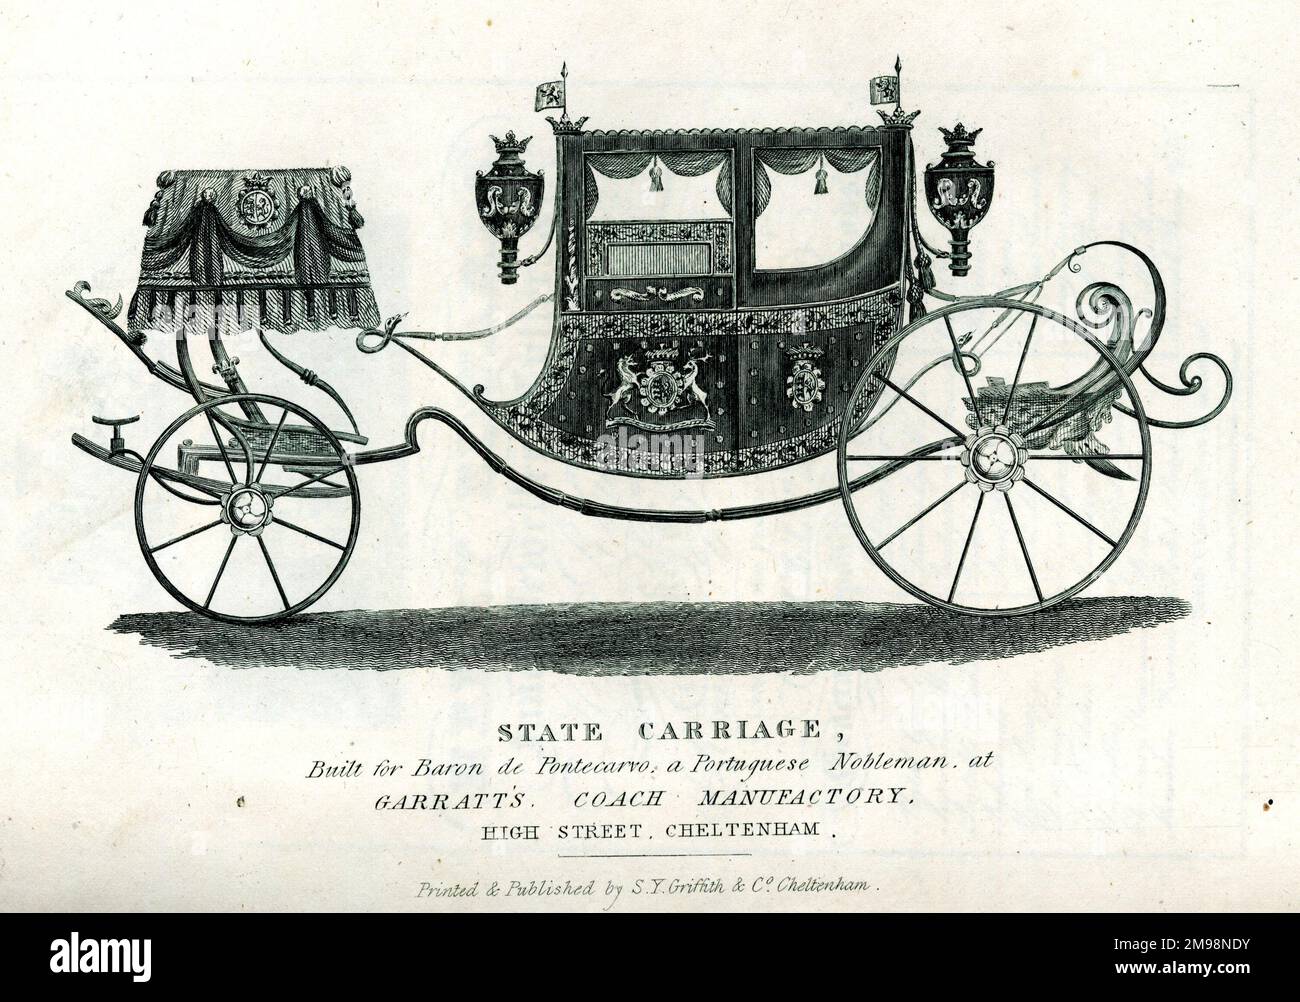 Publicité, Garratt Coach Manufactory, High Street, Cheltenham - une voiture d'état construite pour le Baron de Pontecarvo, un noble portugais. Banque D'Images